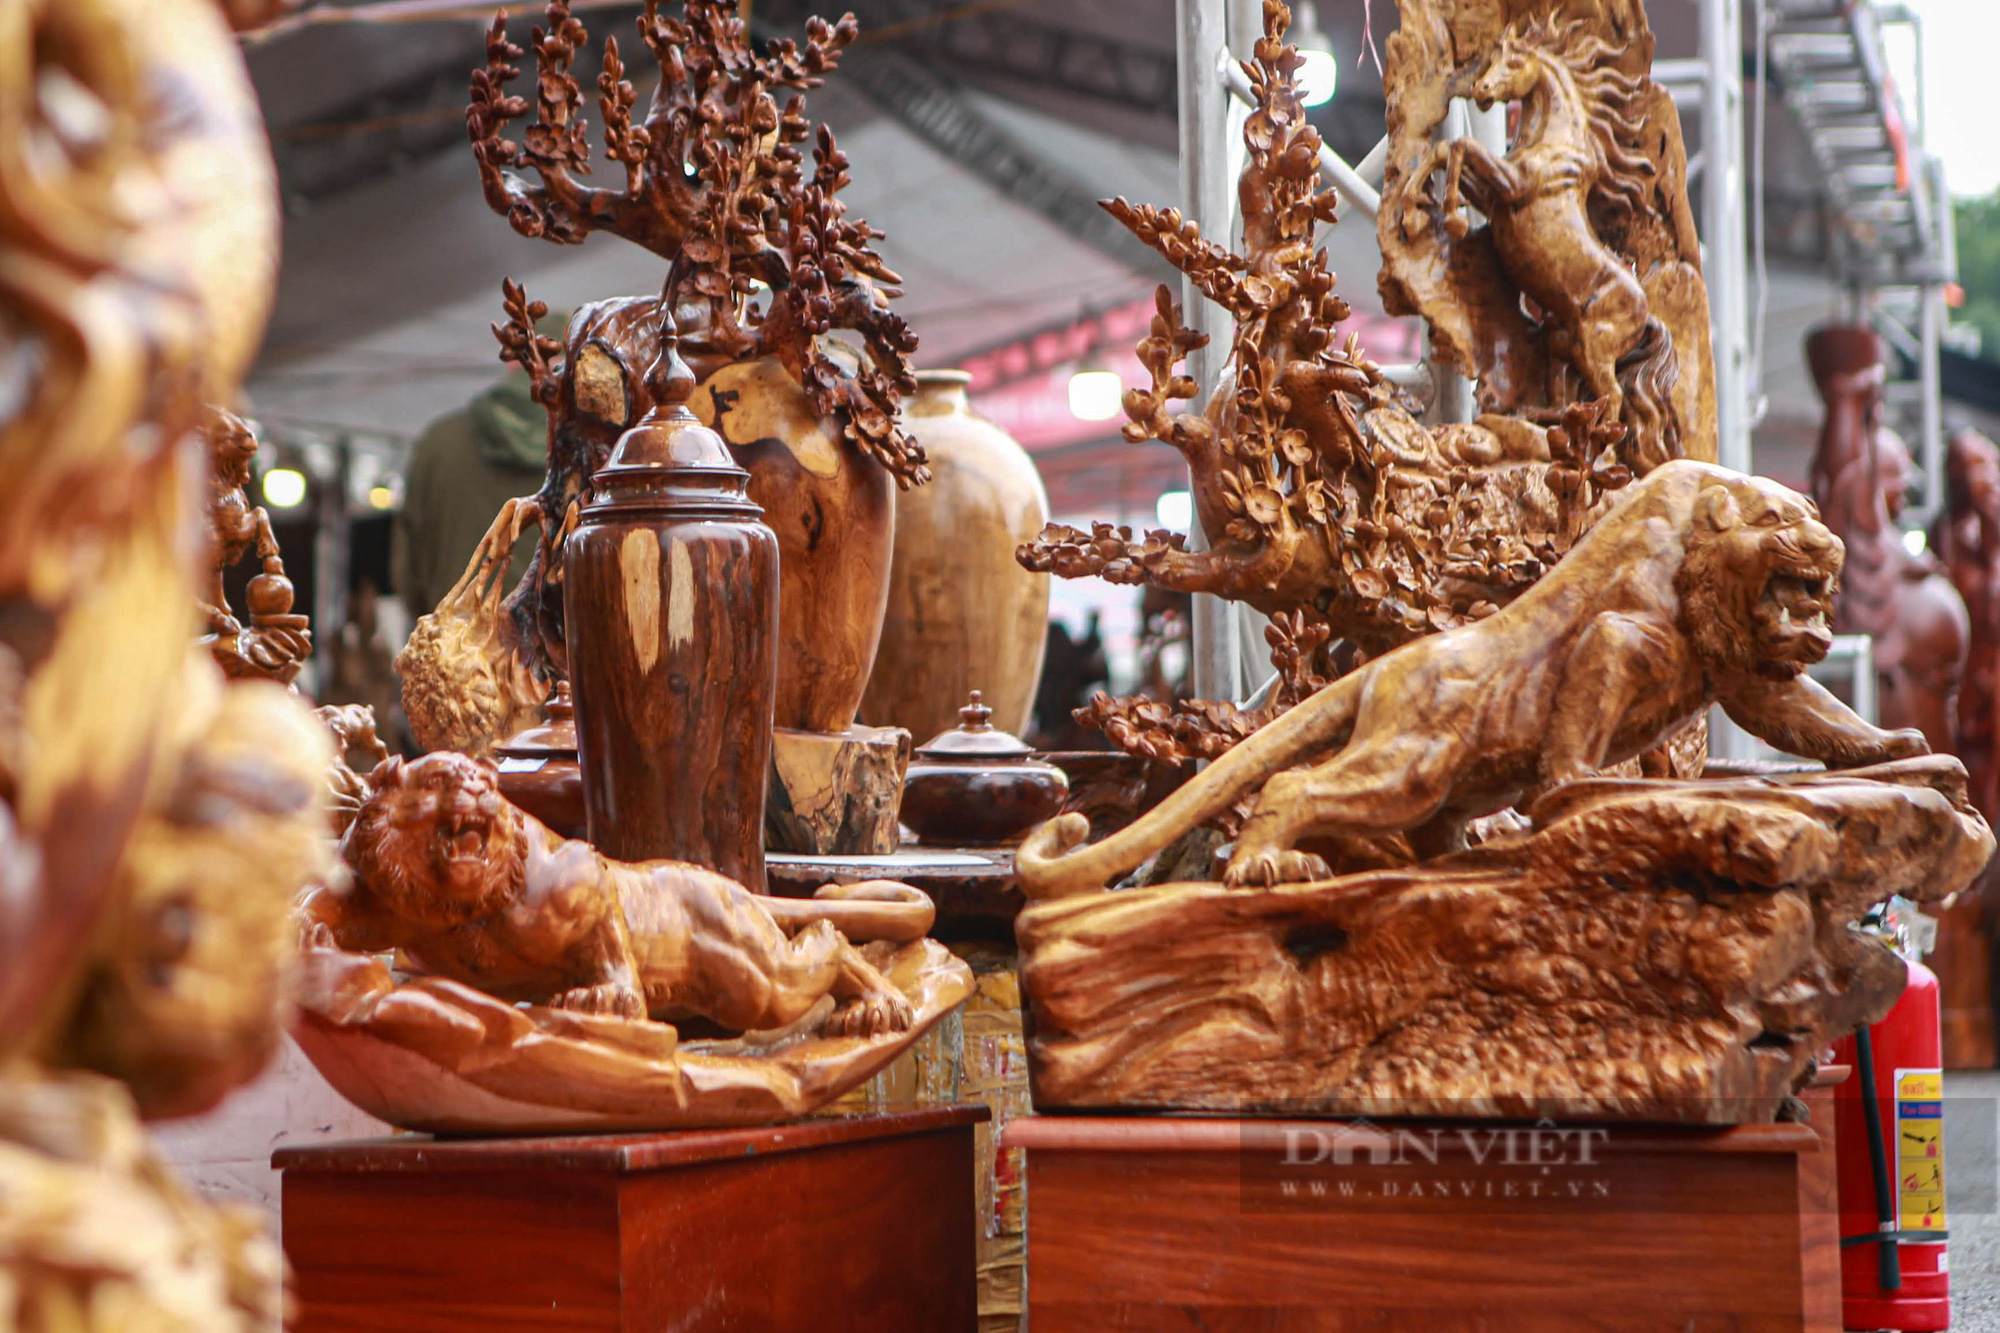 Hổ được làm bằng gỗ mun có giá hơn 100 triệu đồng tại chợ hoa xuân 2022 - Ảnh 2.